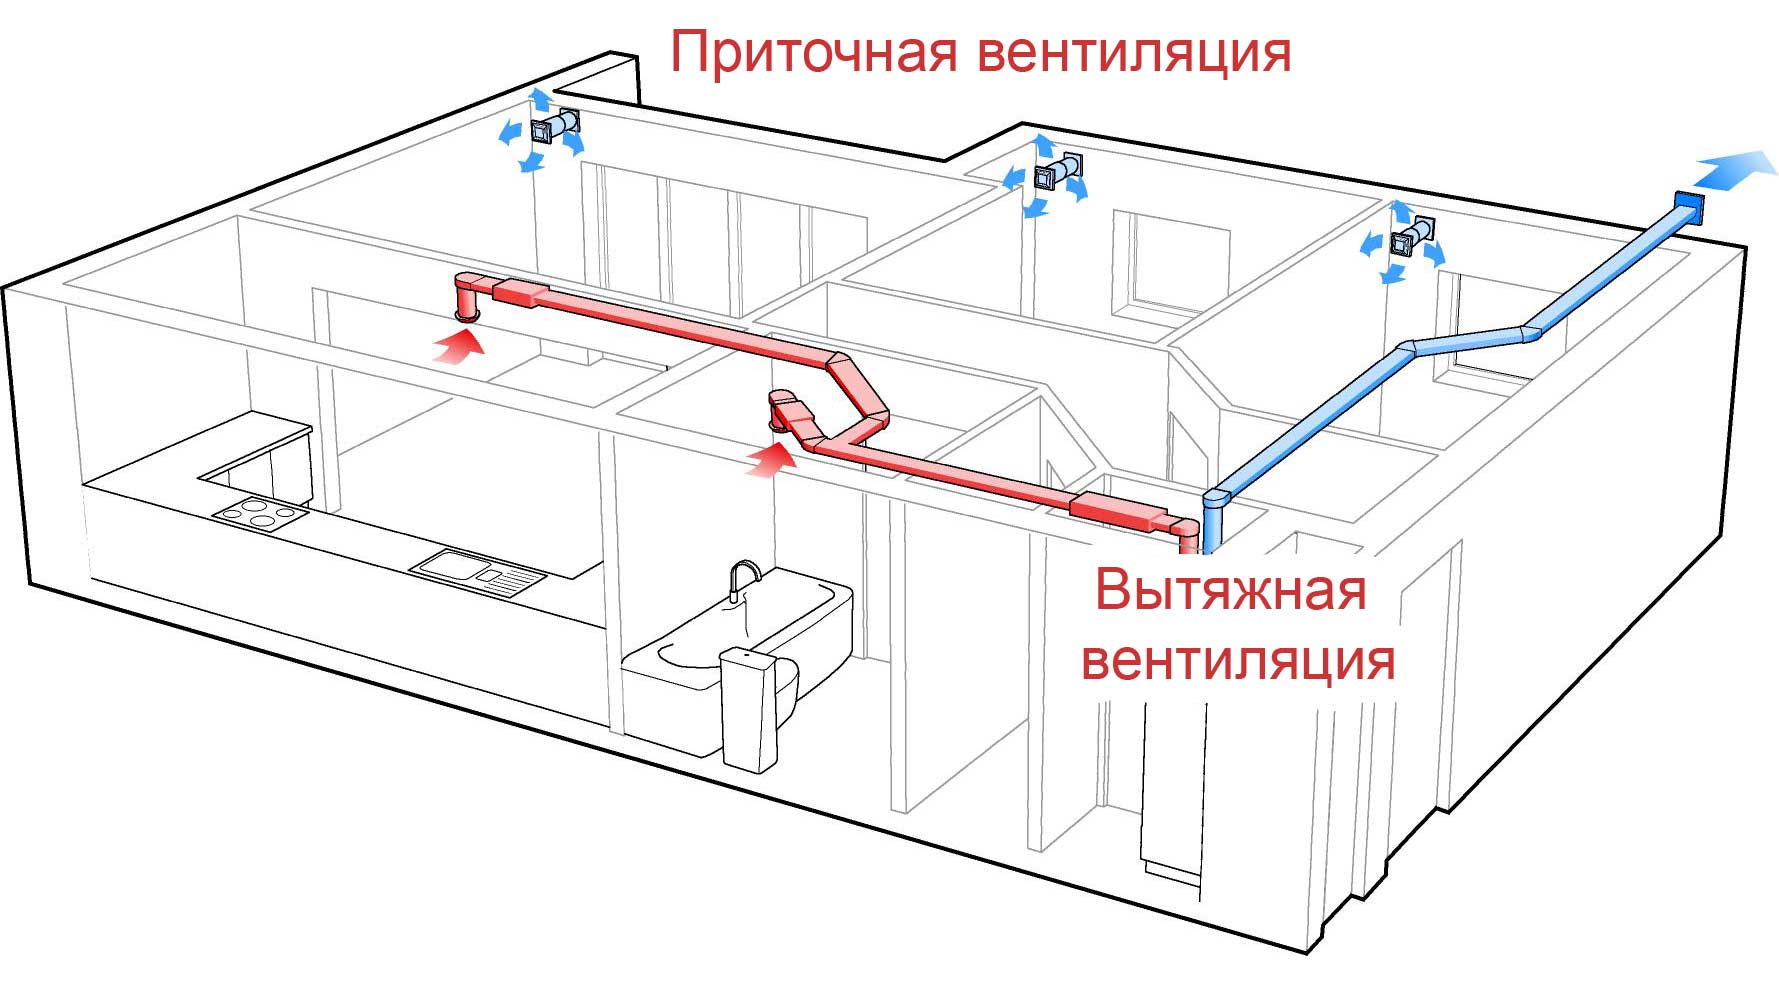 Приточно-вытяжная вентиляция: принцип работы, виды установок и монтаж (в квартире и частном доме)